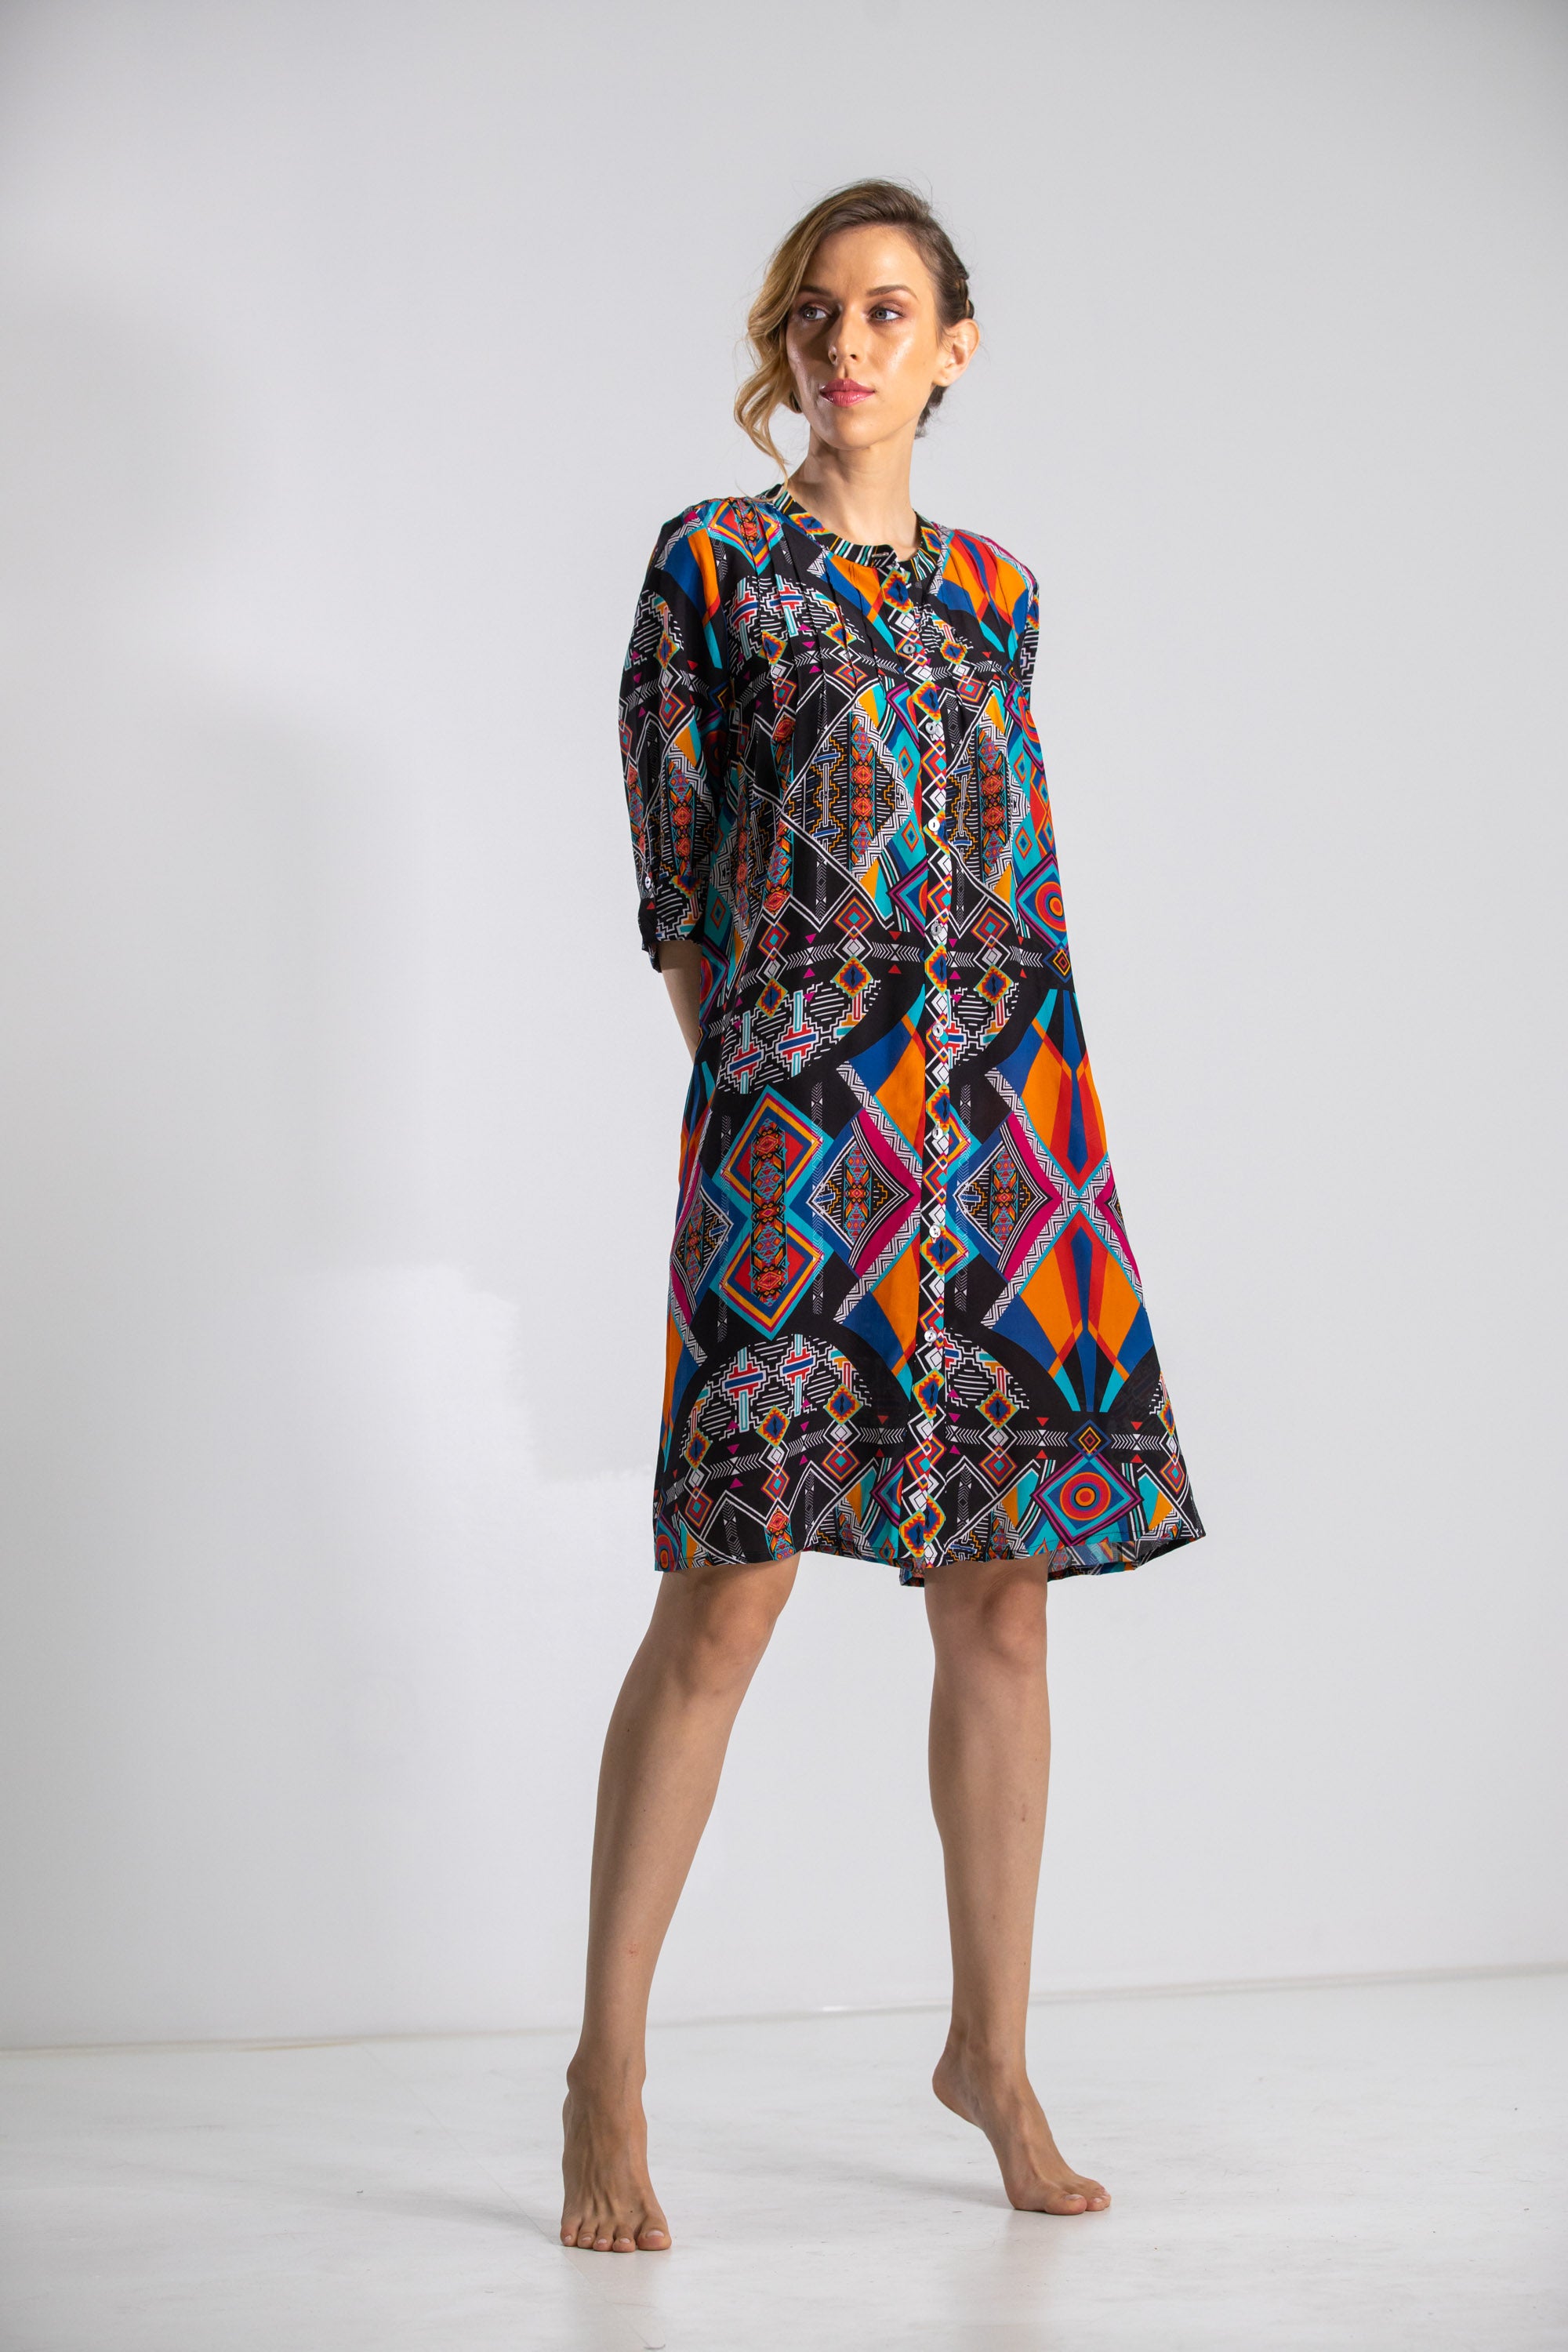 HIMBA AFRICANA - PINTUCK DRESS